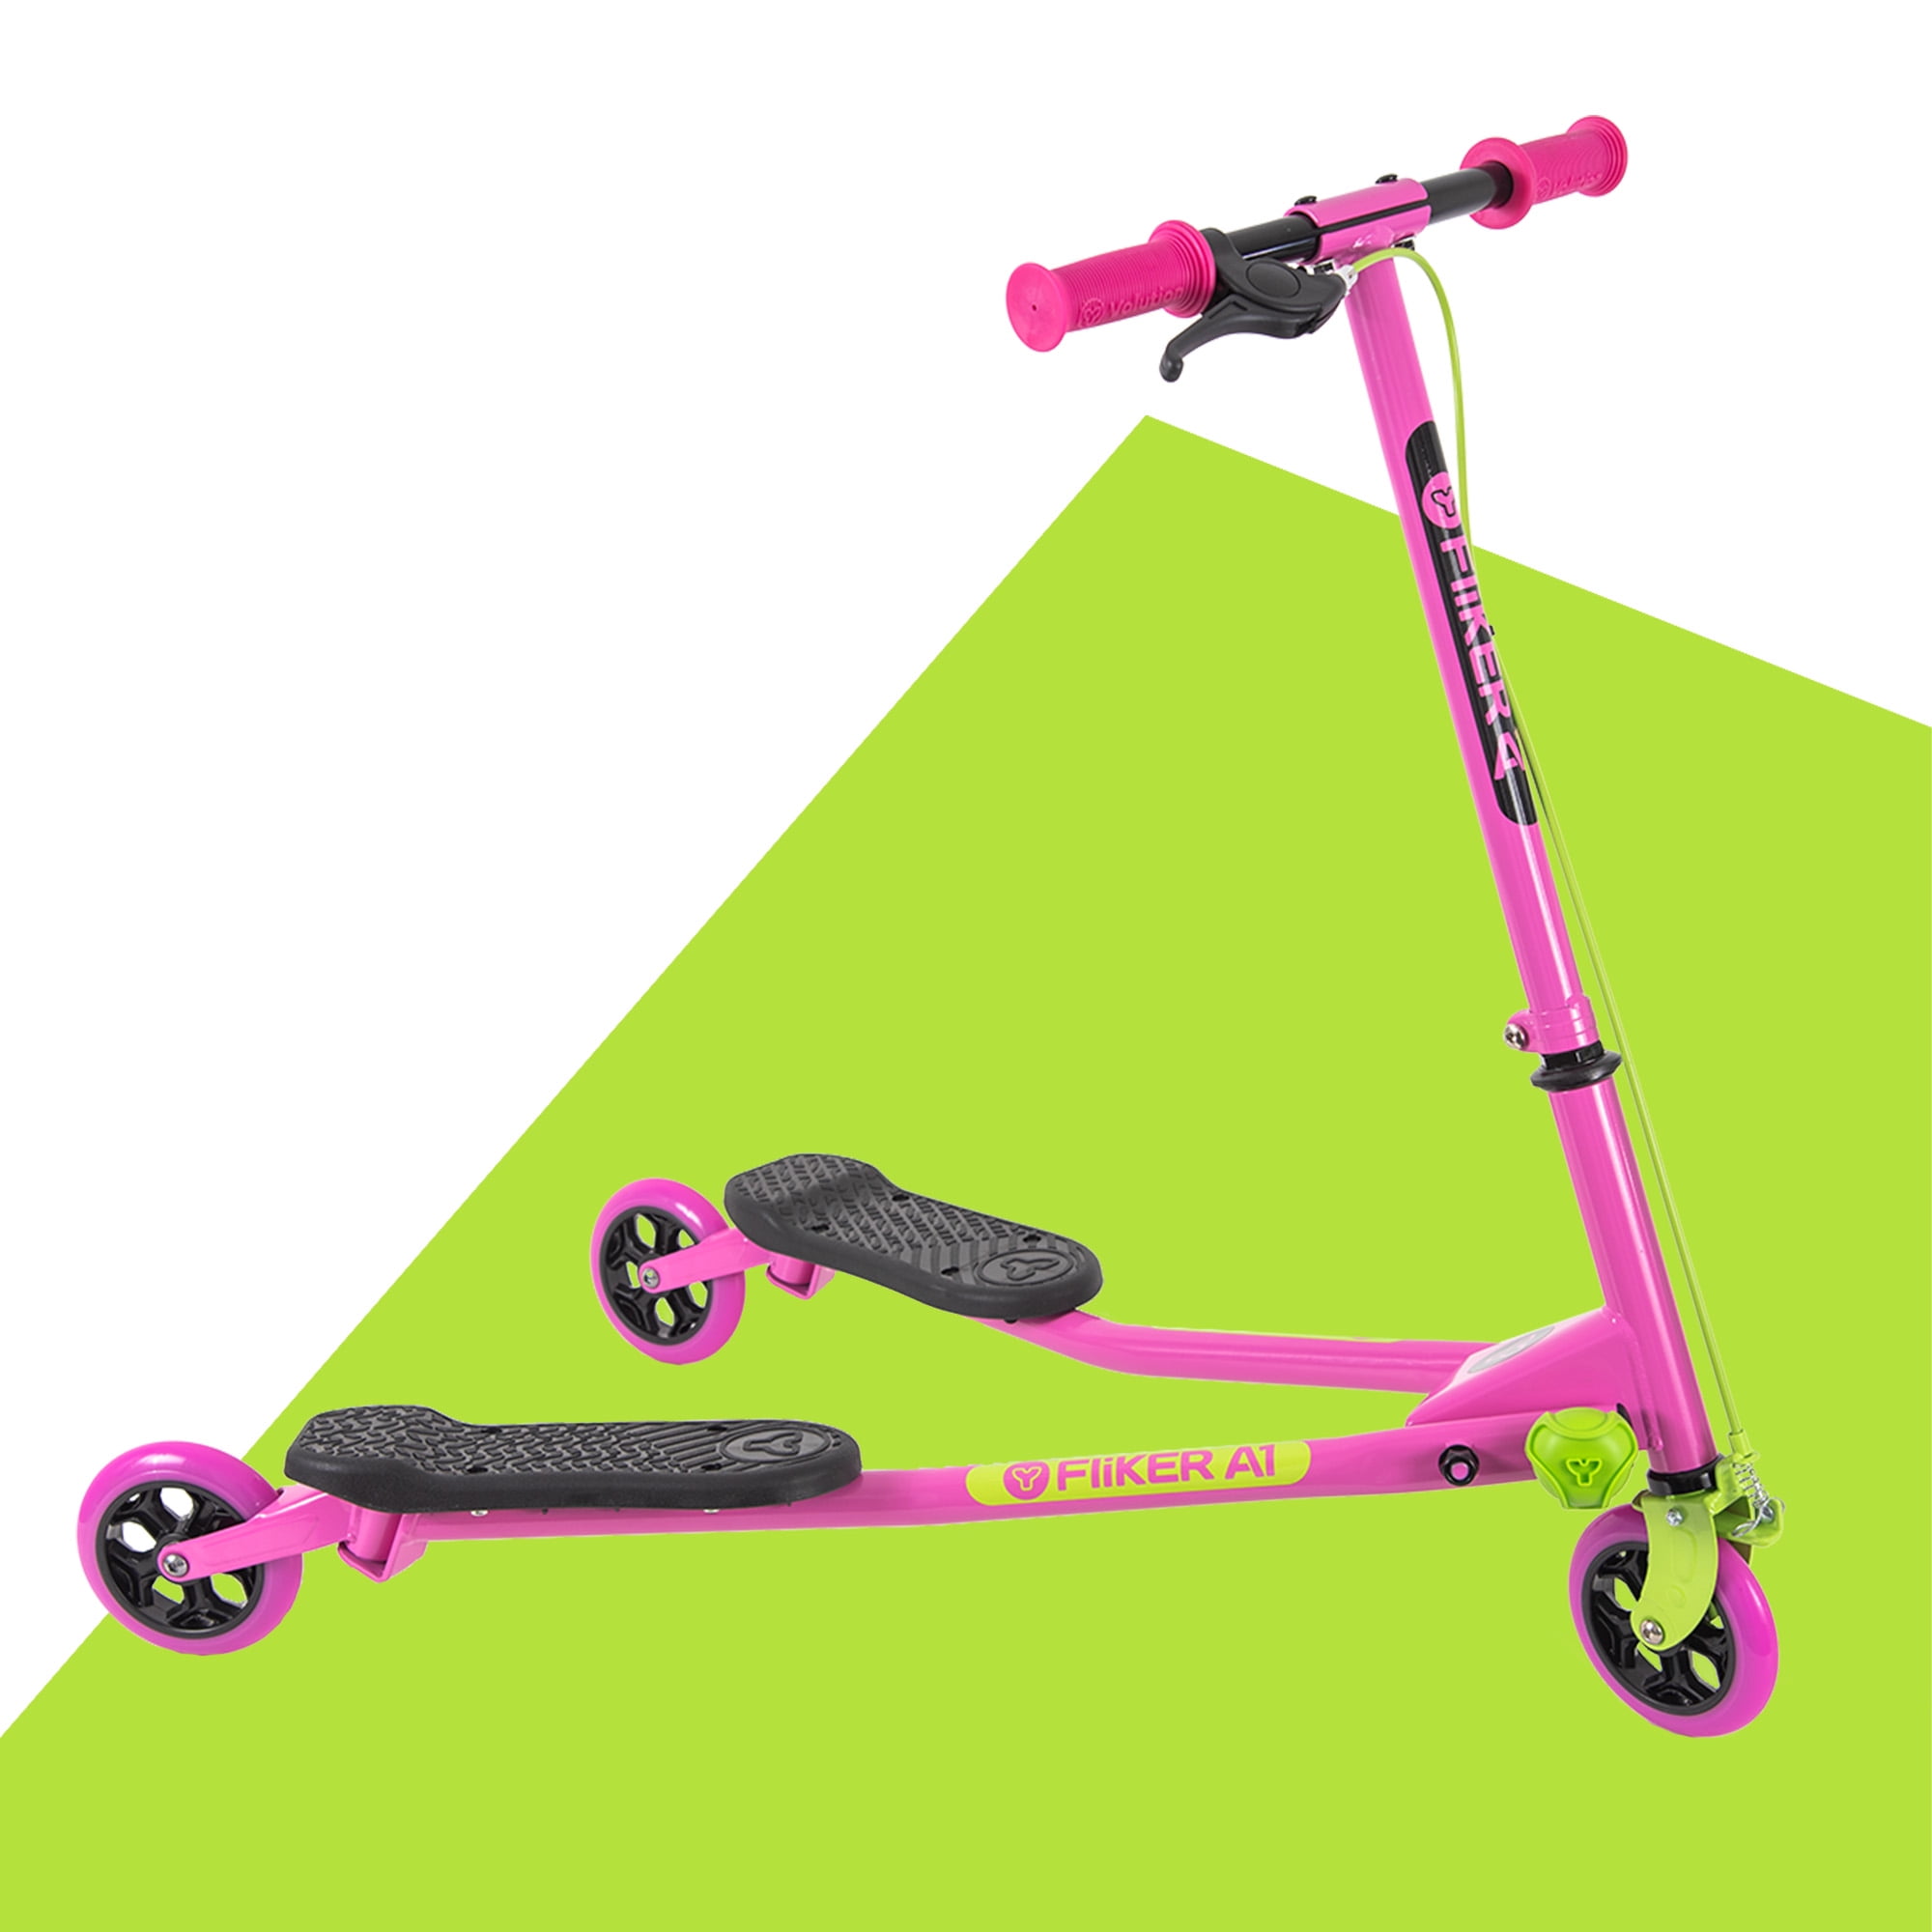 Yvolution Y Fliker A1 | 3 Wheel Drift Kids Scooter 5-8 Years Old